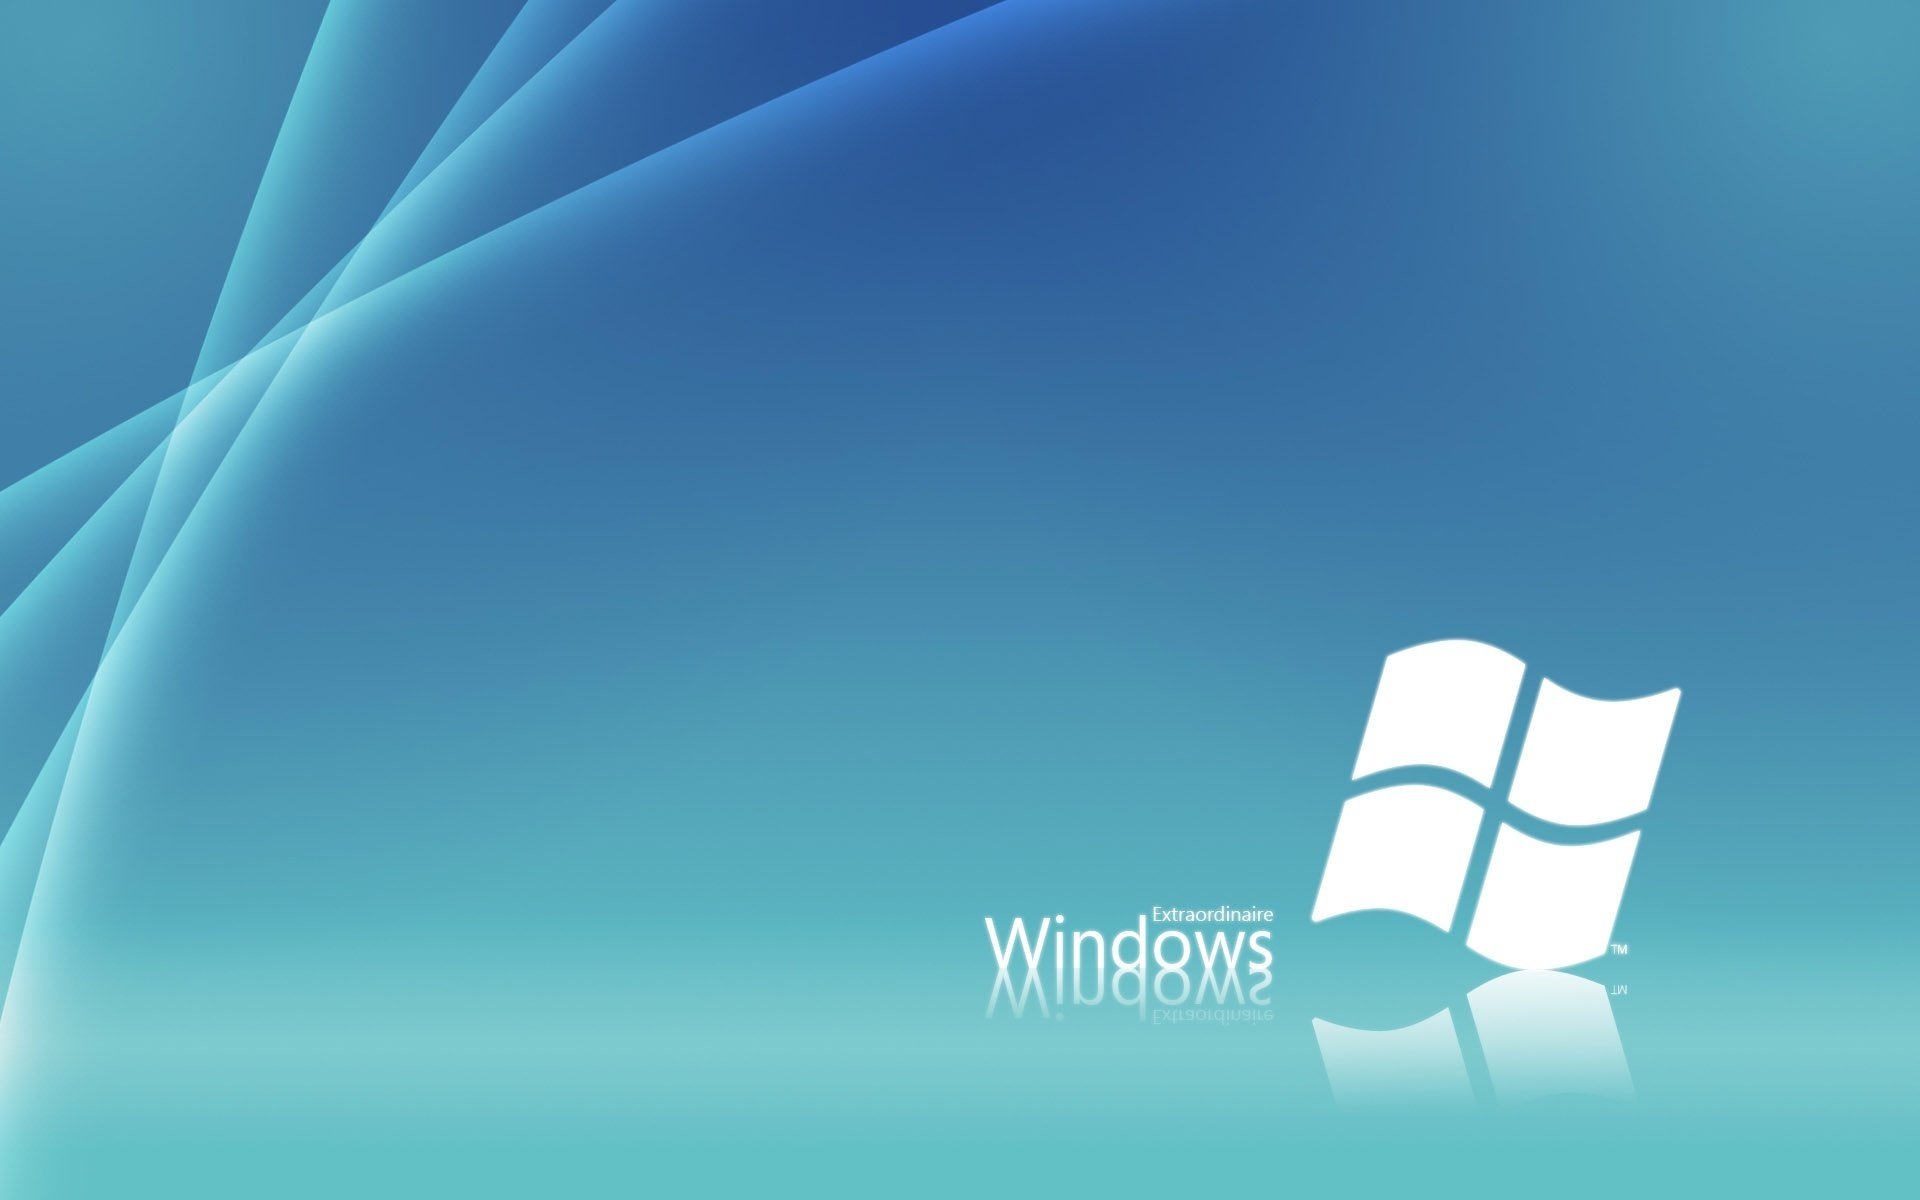 Белый значок windows на голубом фоне